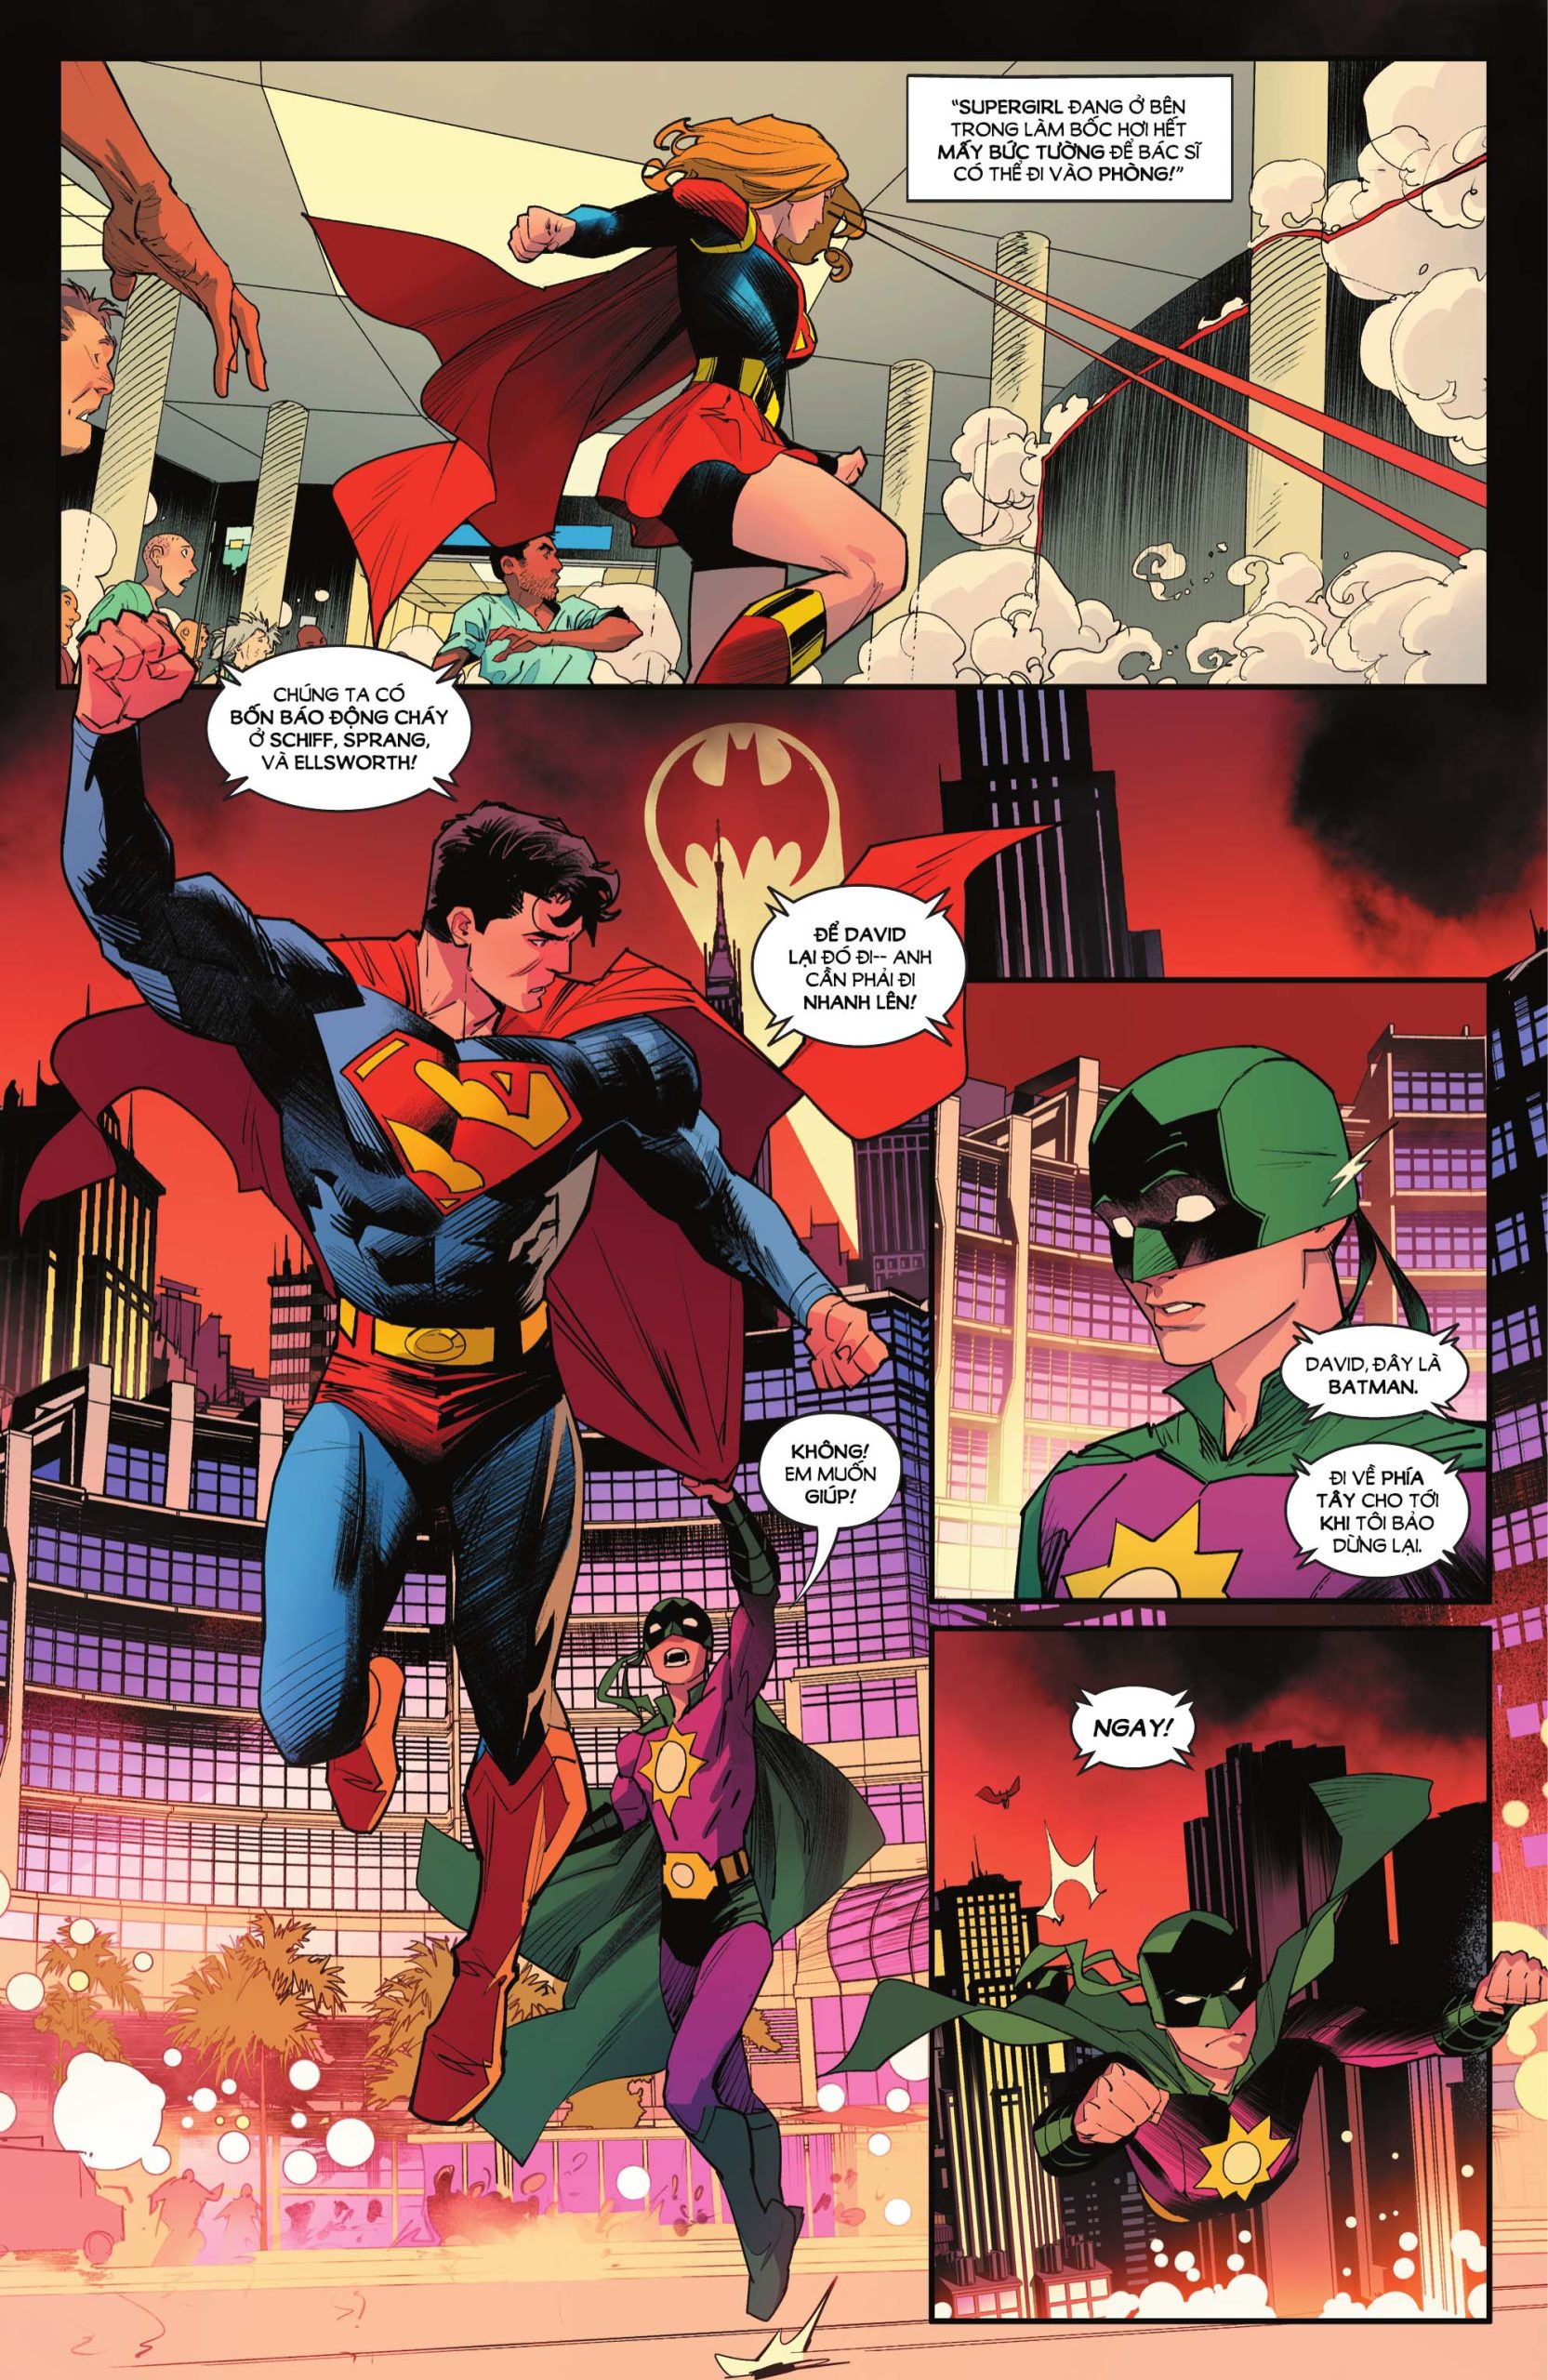 https://langgeek.net/wp-content/webpc-passthru.php?src=https://langgeek.net/wp-content/uploads/2023/05/Batman-Superman-Worlds-Finest-008-011-scaled.jpg&nocache=1